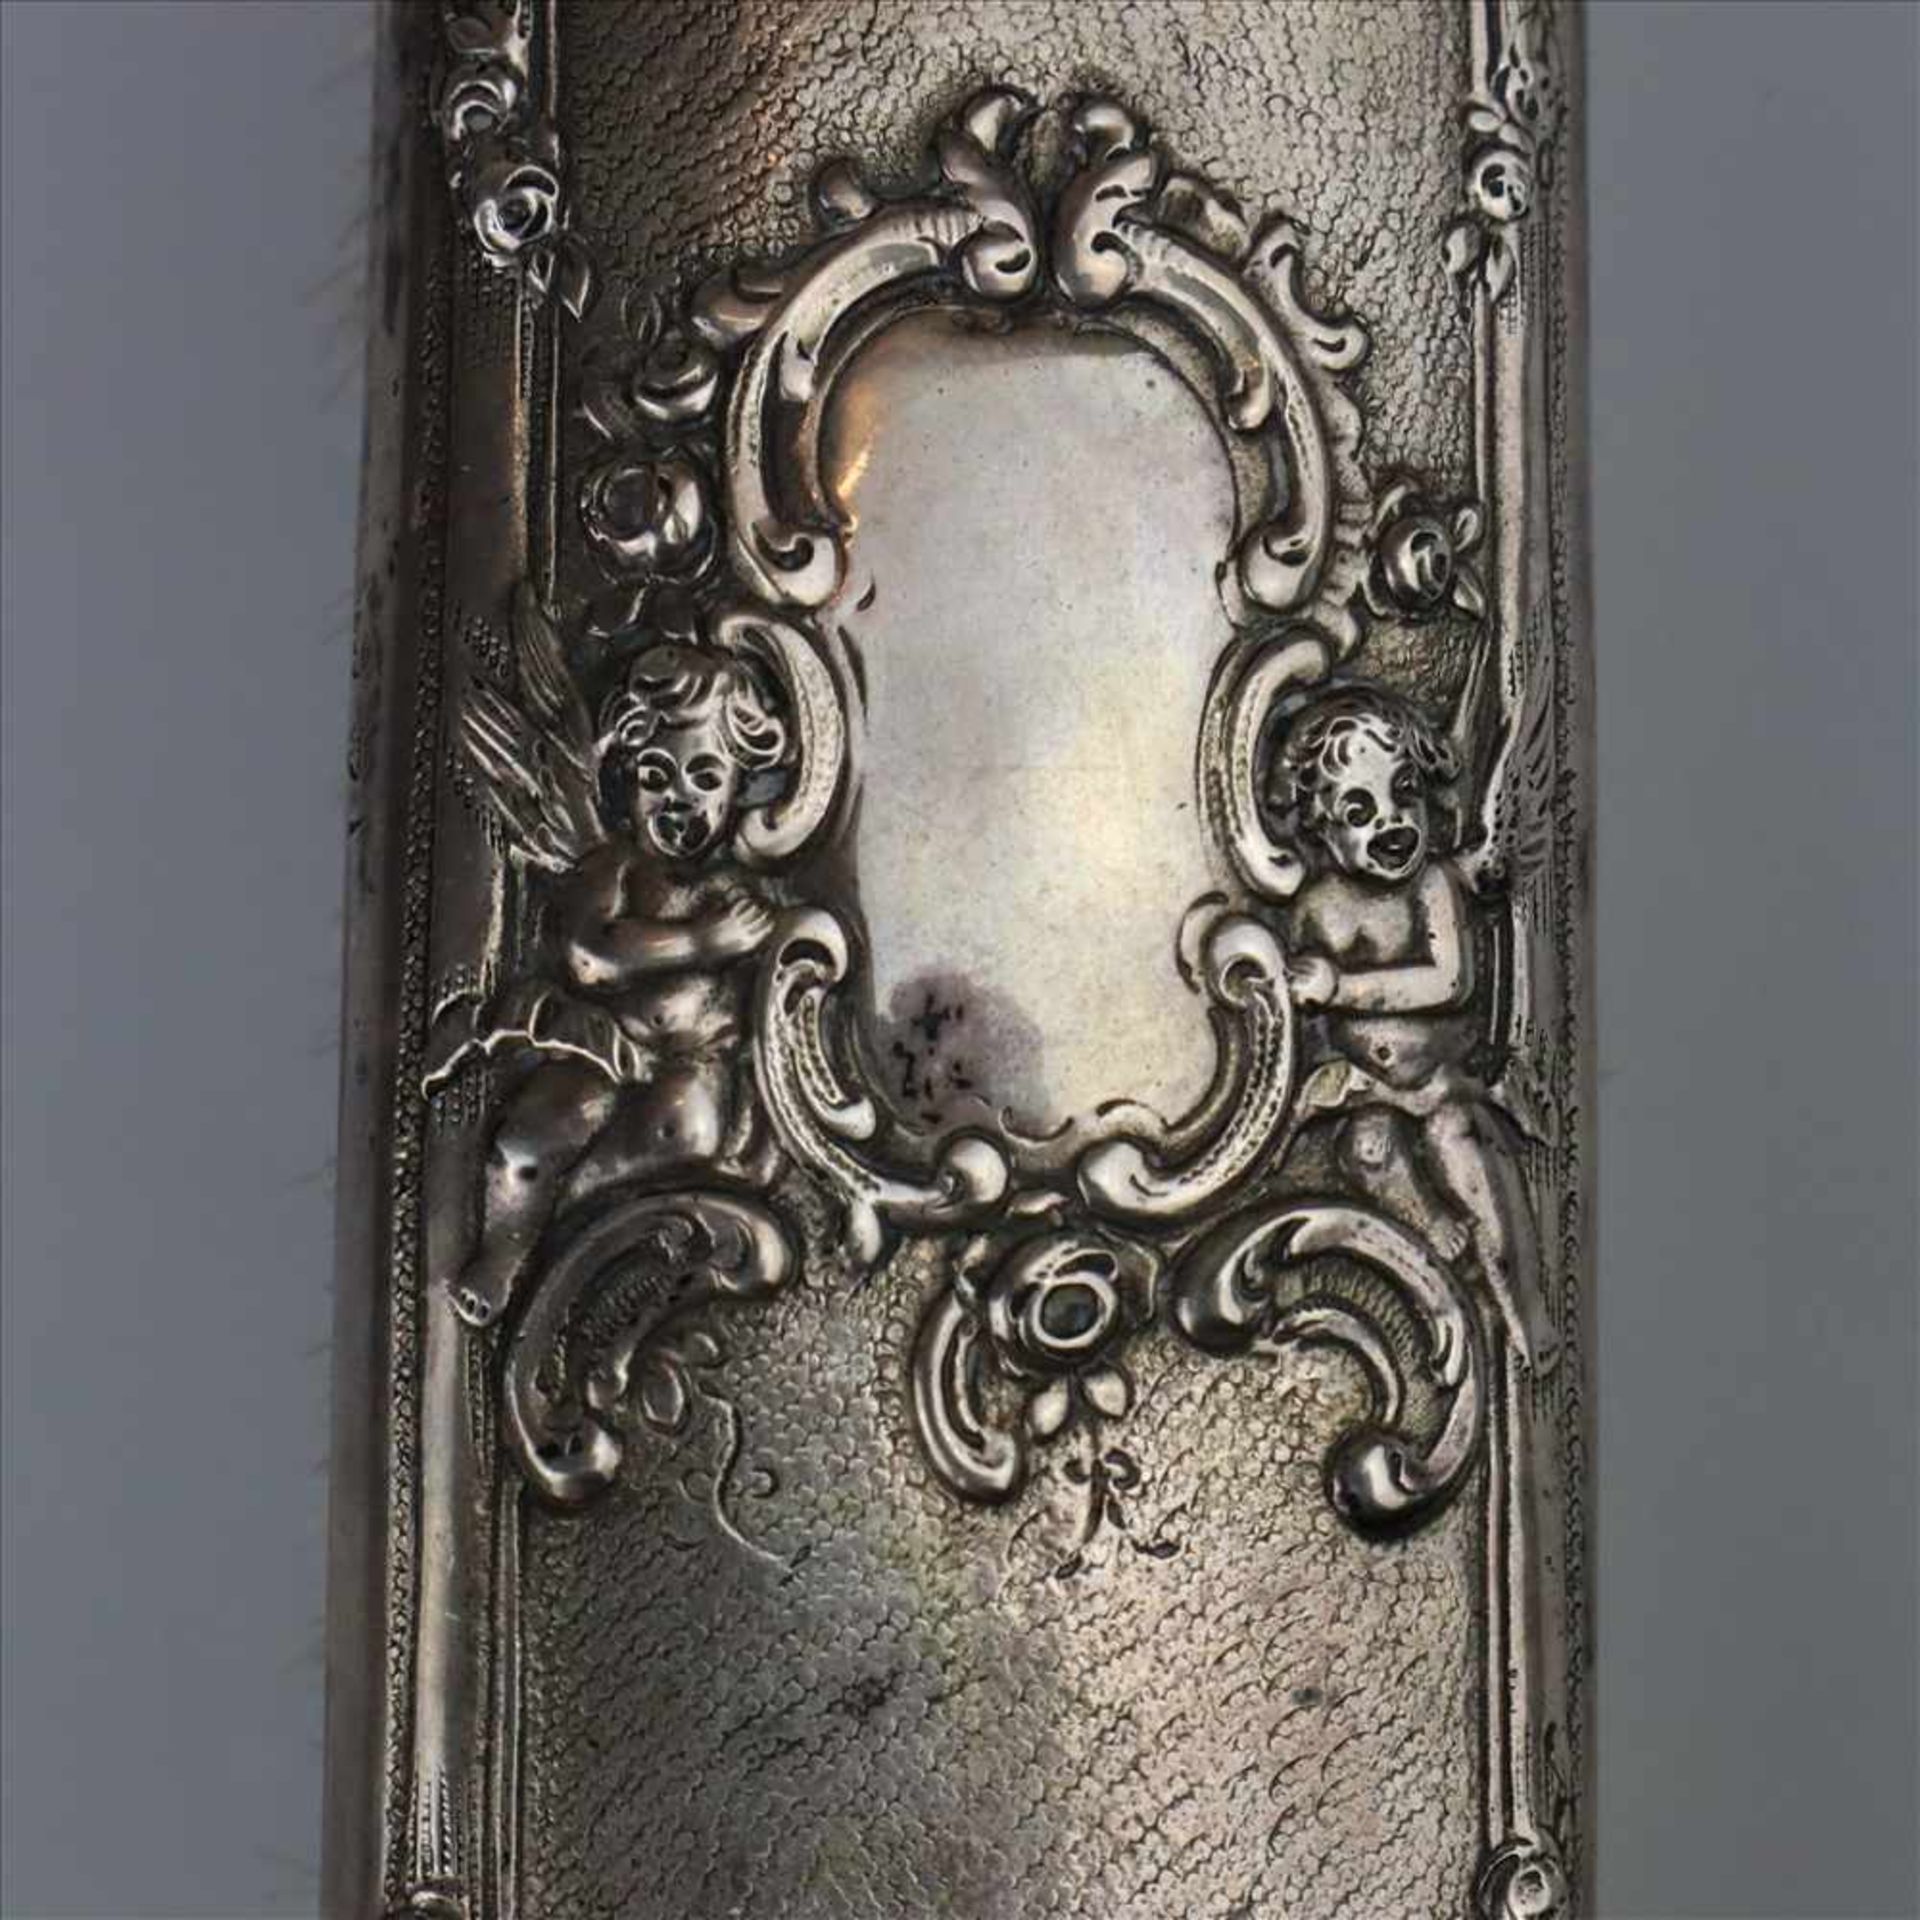 Bürste- Silber gestempelt "800", weitere Punzierungen, Reliefdekor: von zwei Putten flankierte leere - Bild 4 aus 6